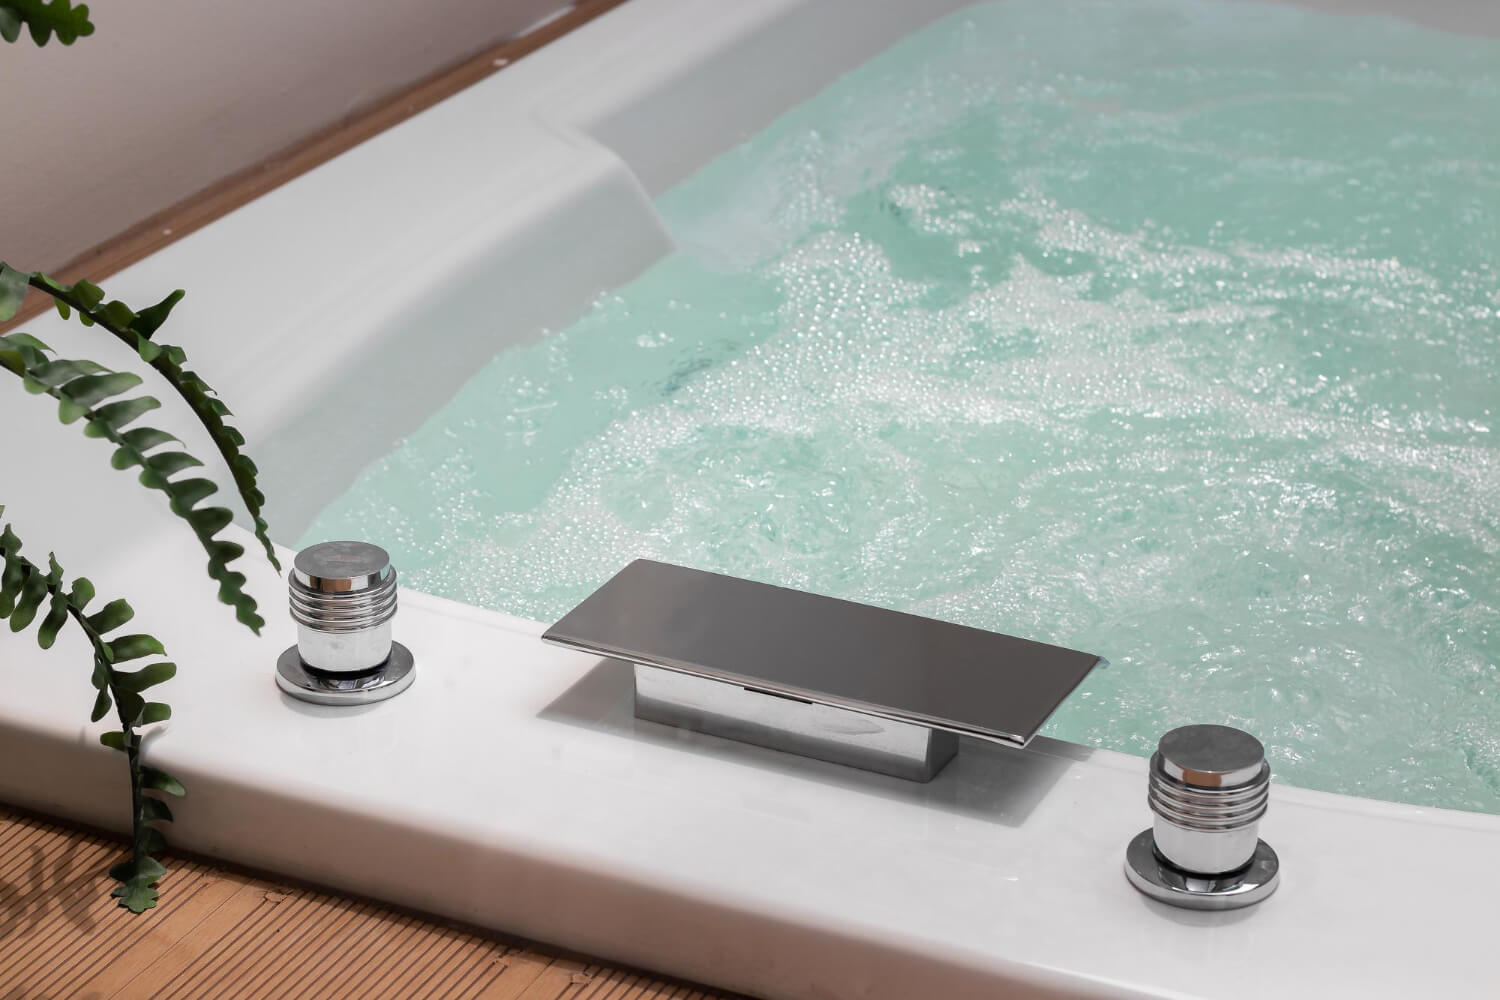 מהפכה באמבטיה: כך תהפכו את הג'קוזי הישן לאמבטיה רגילה ומודרנית